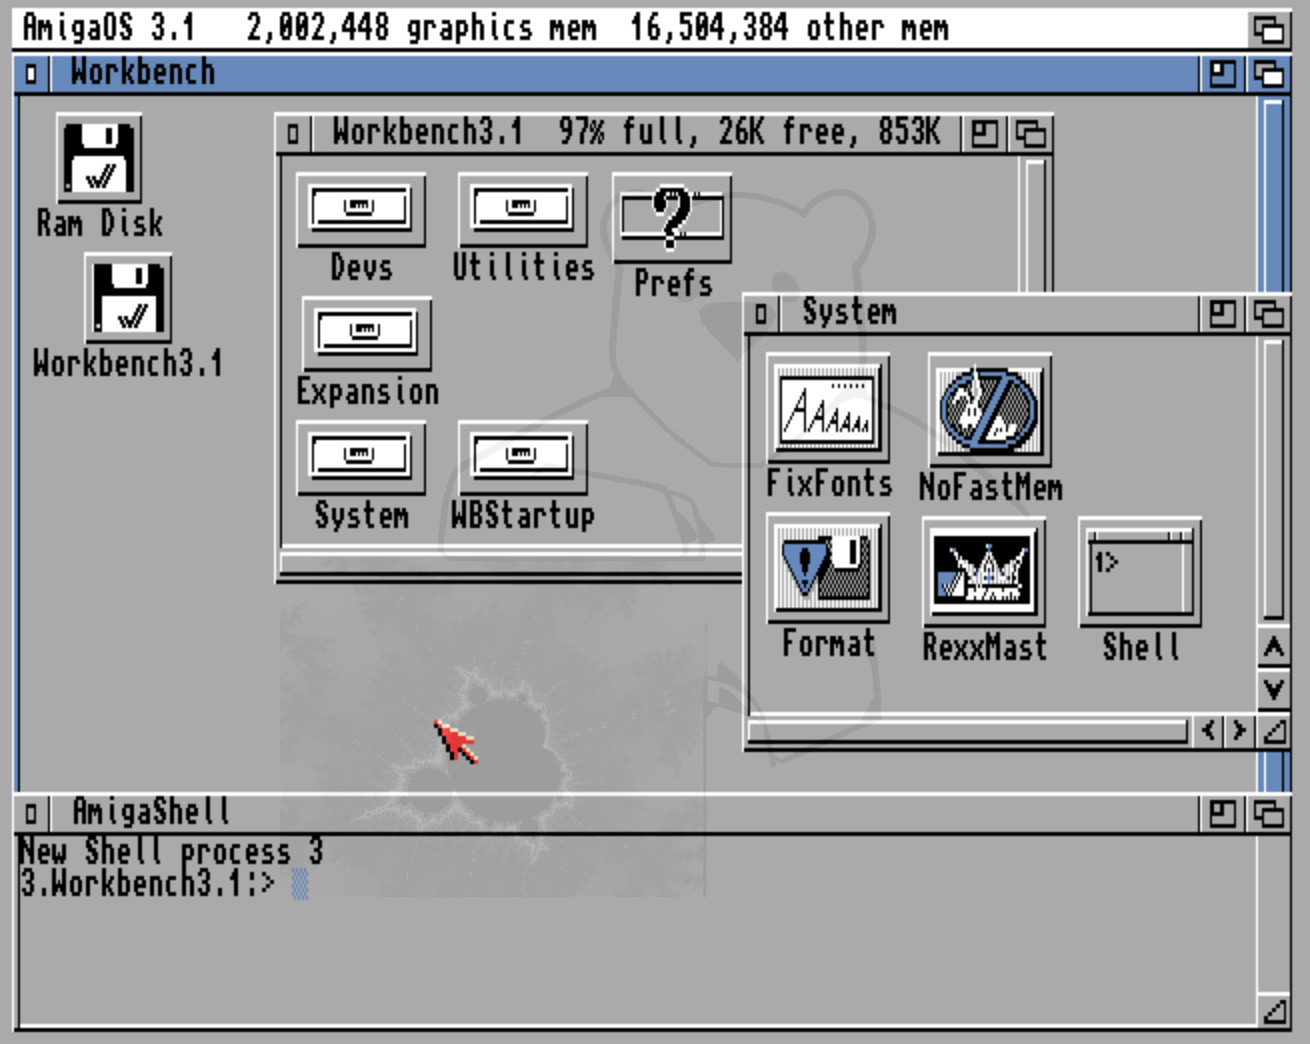 Aussehen Amiga Kickstart 3.1 mit der Workbench 3.1